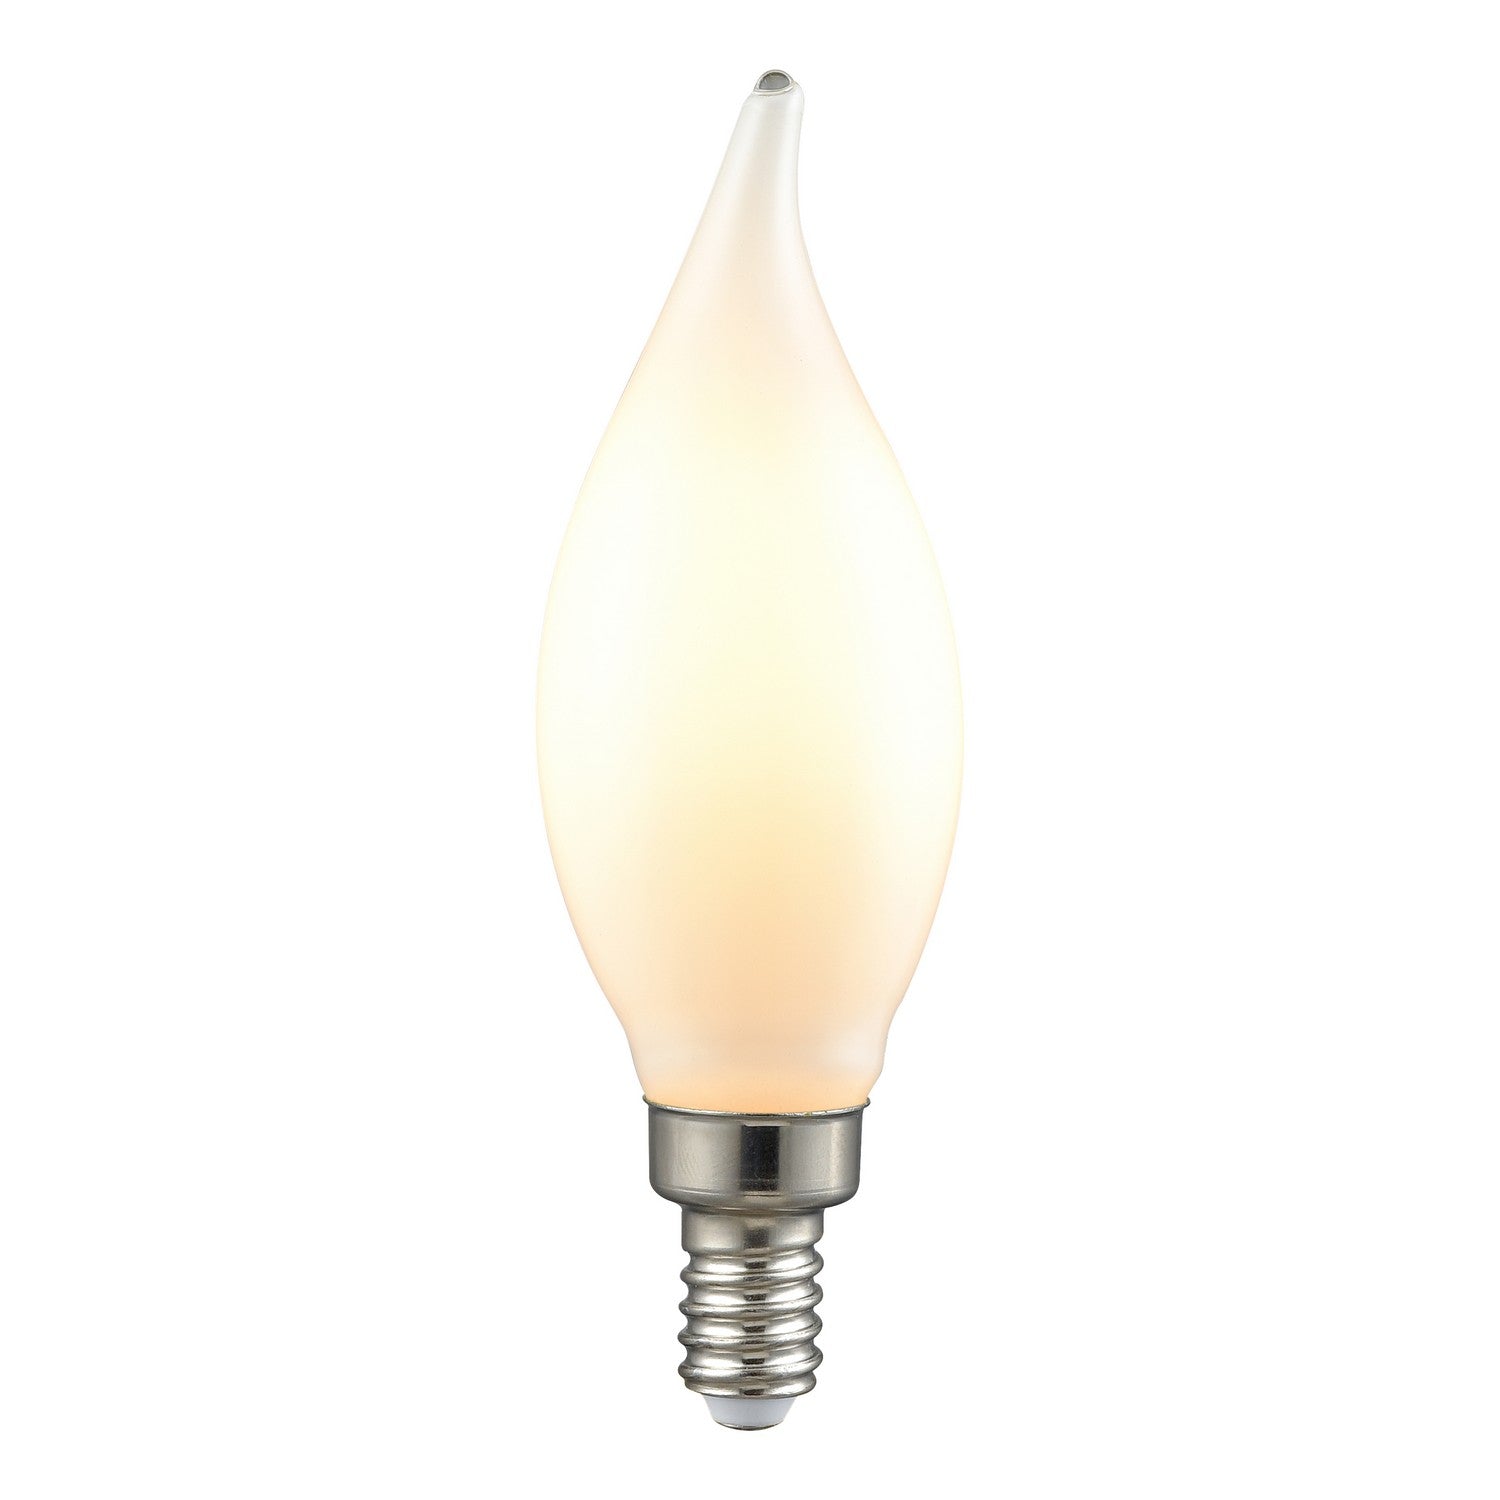 ELK Home - 1122 - Light Bulb - White